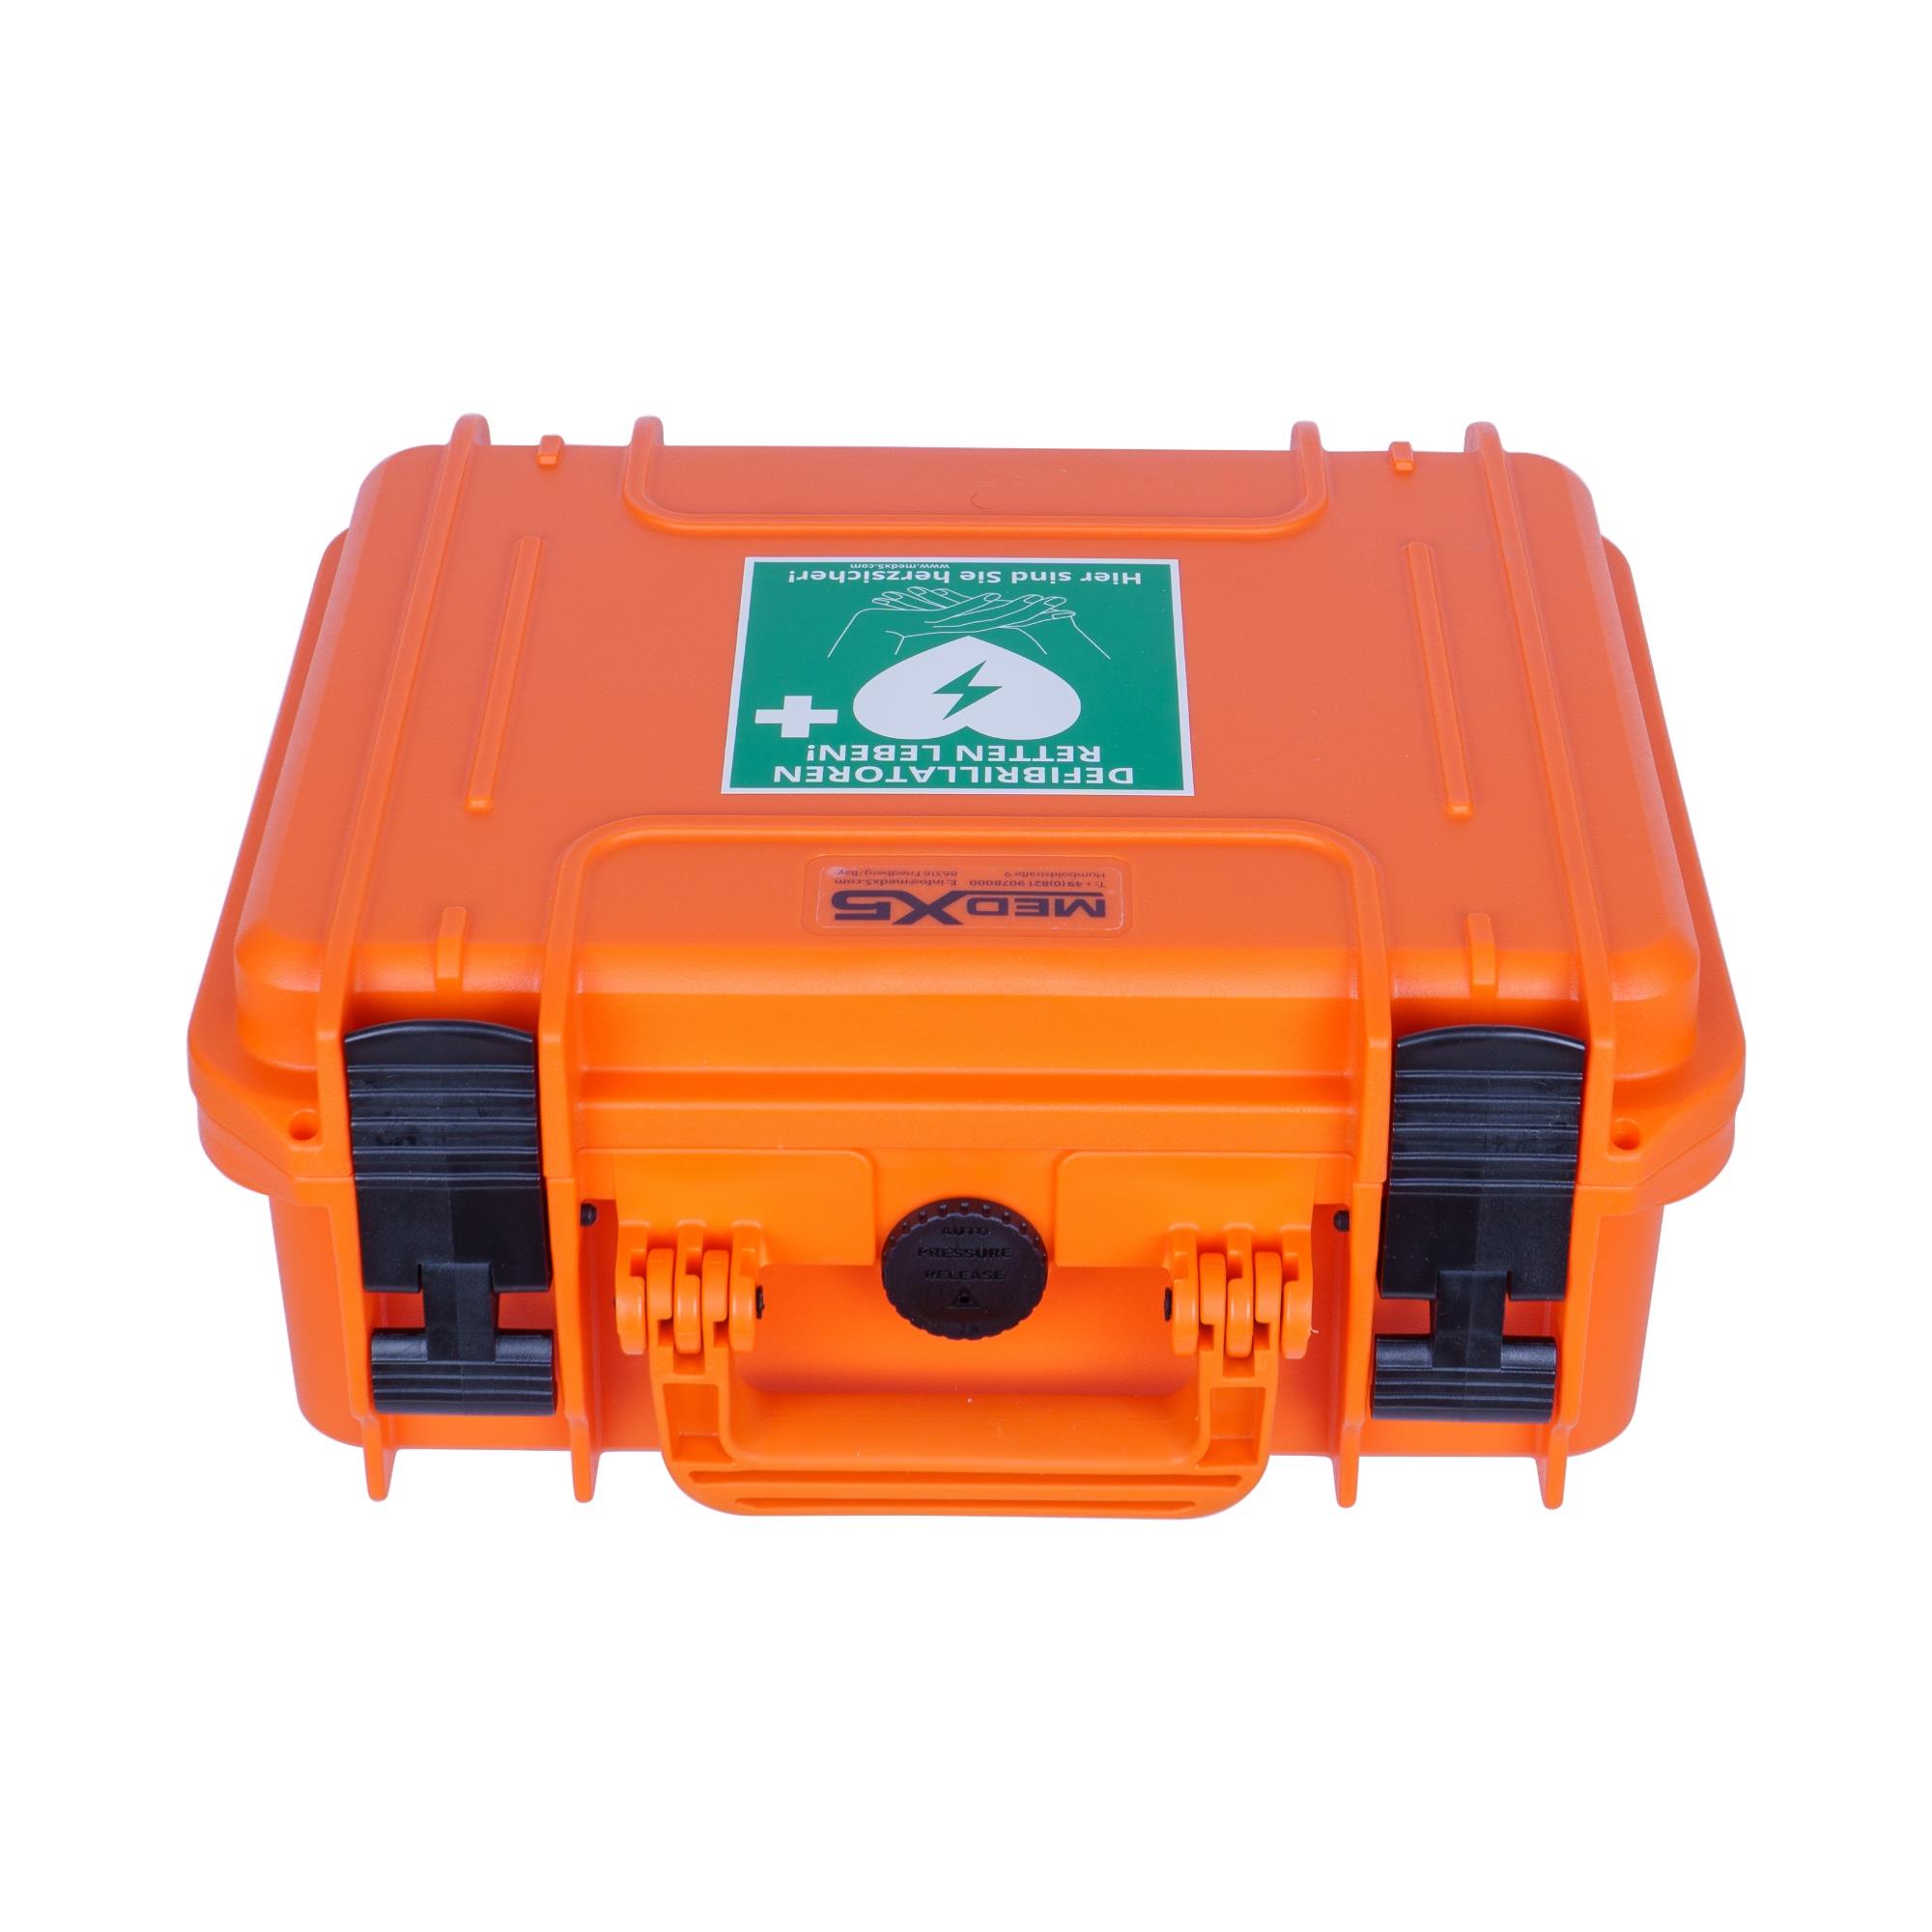 Wasserdichte Defibrillator-Outdoorbox